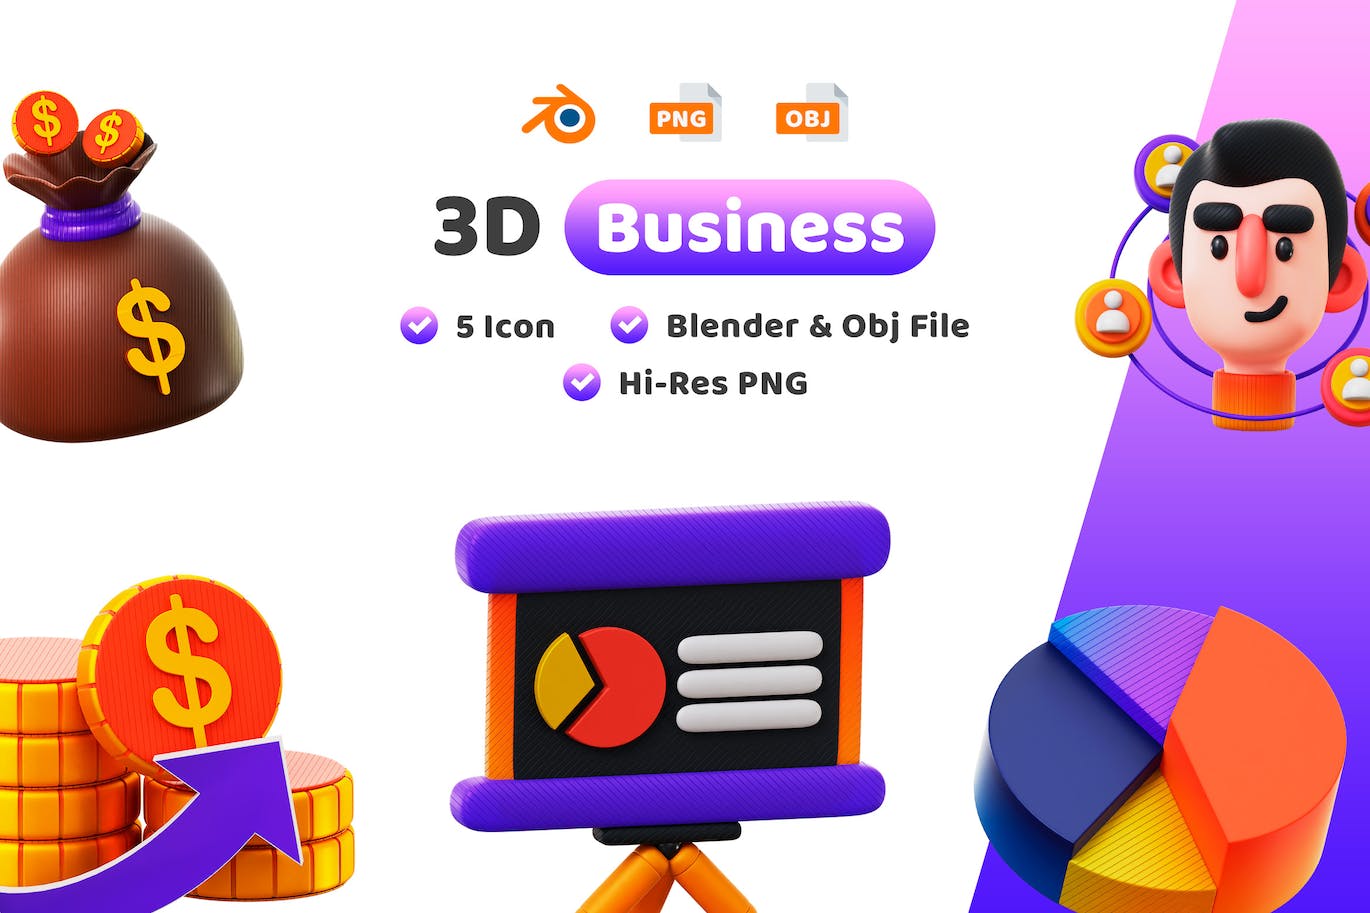 商业金融主题3D图标 Business 3D Icon 图标素材 第1张